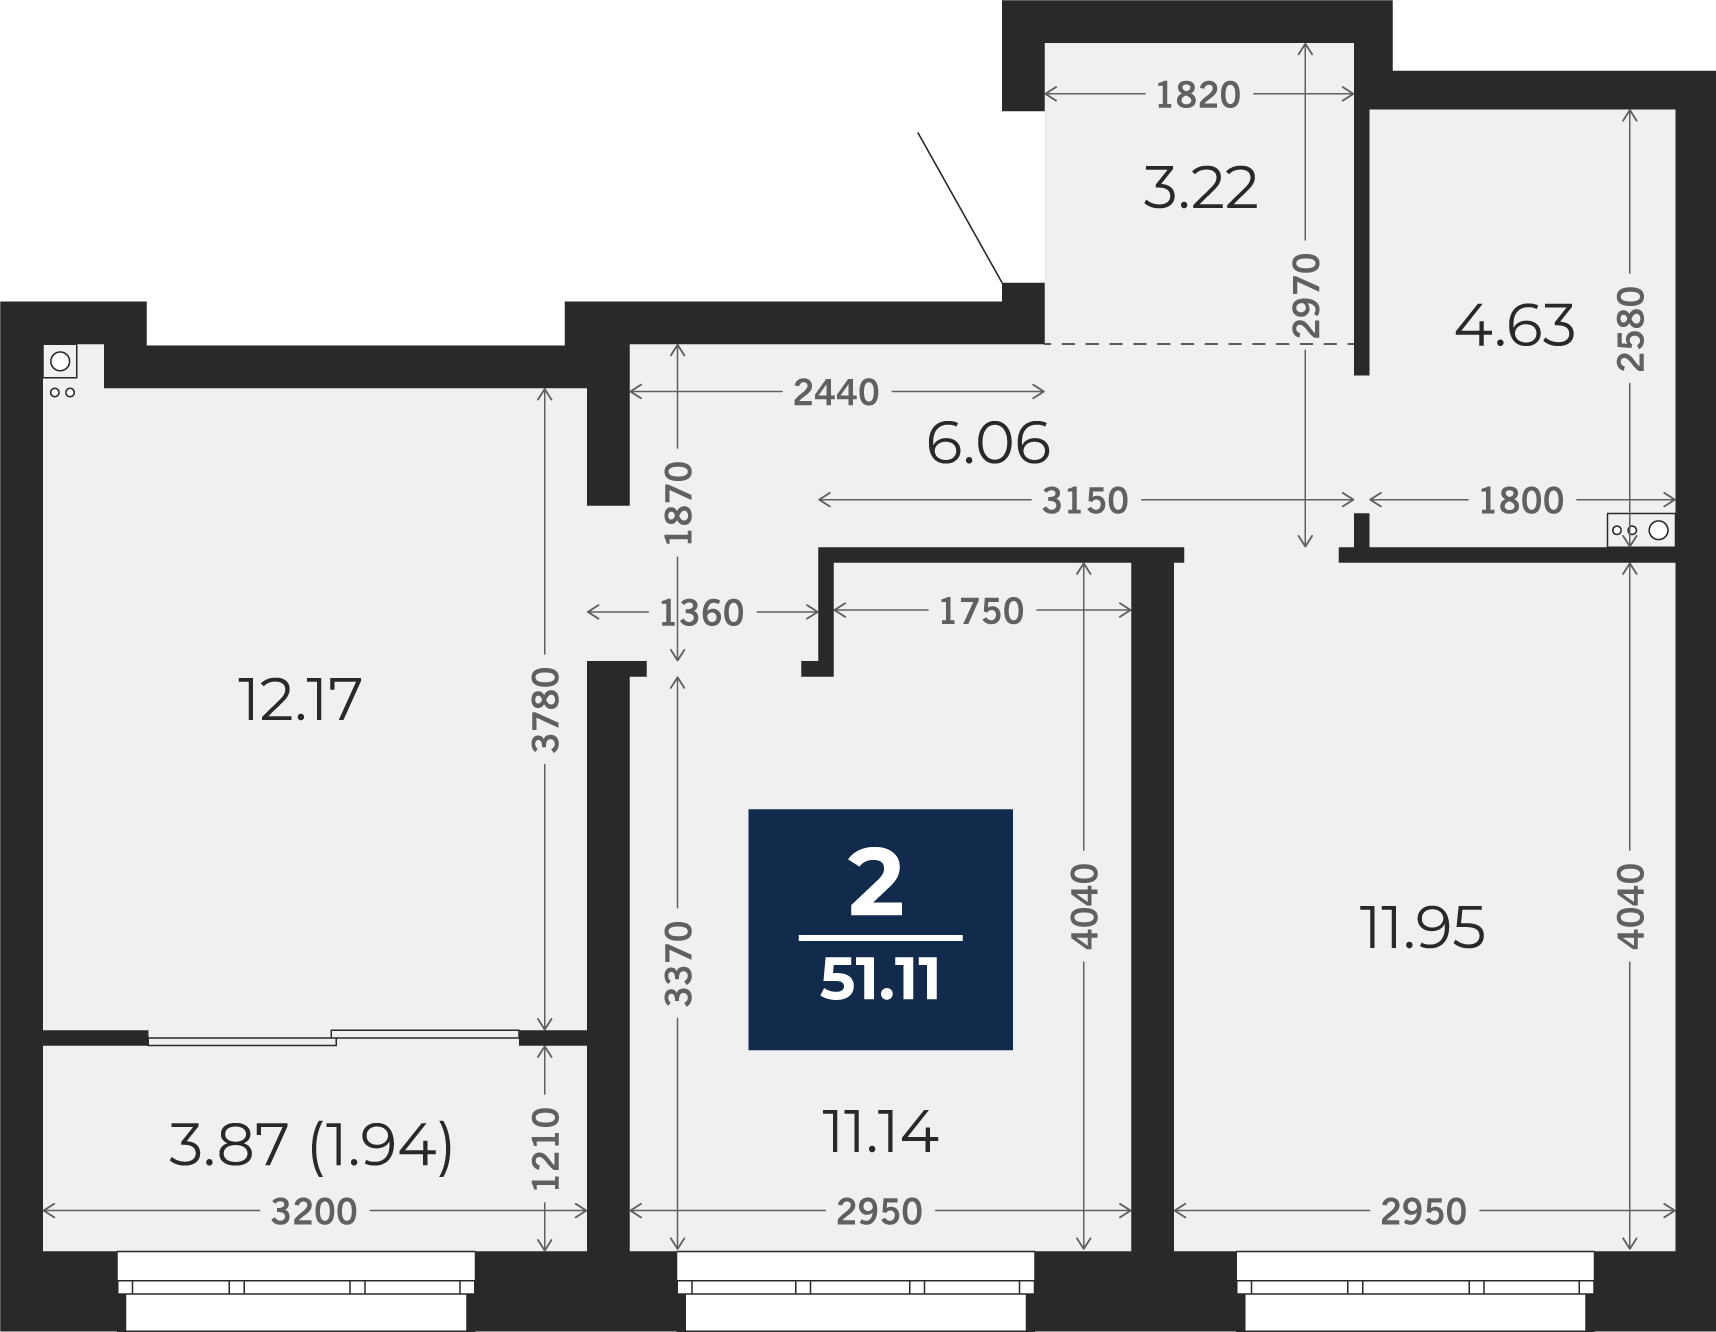 Квартира № 4, 2-комнатная, 51.11 кв. м, 2 этаж